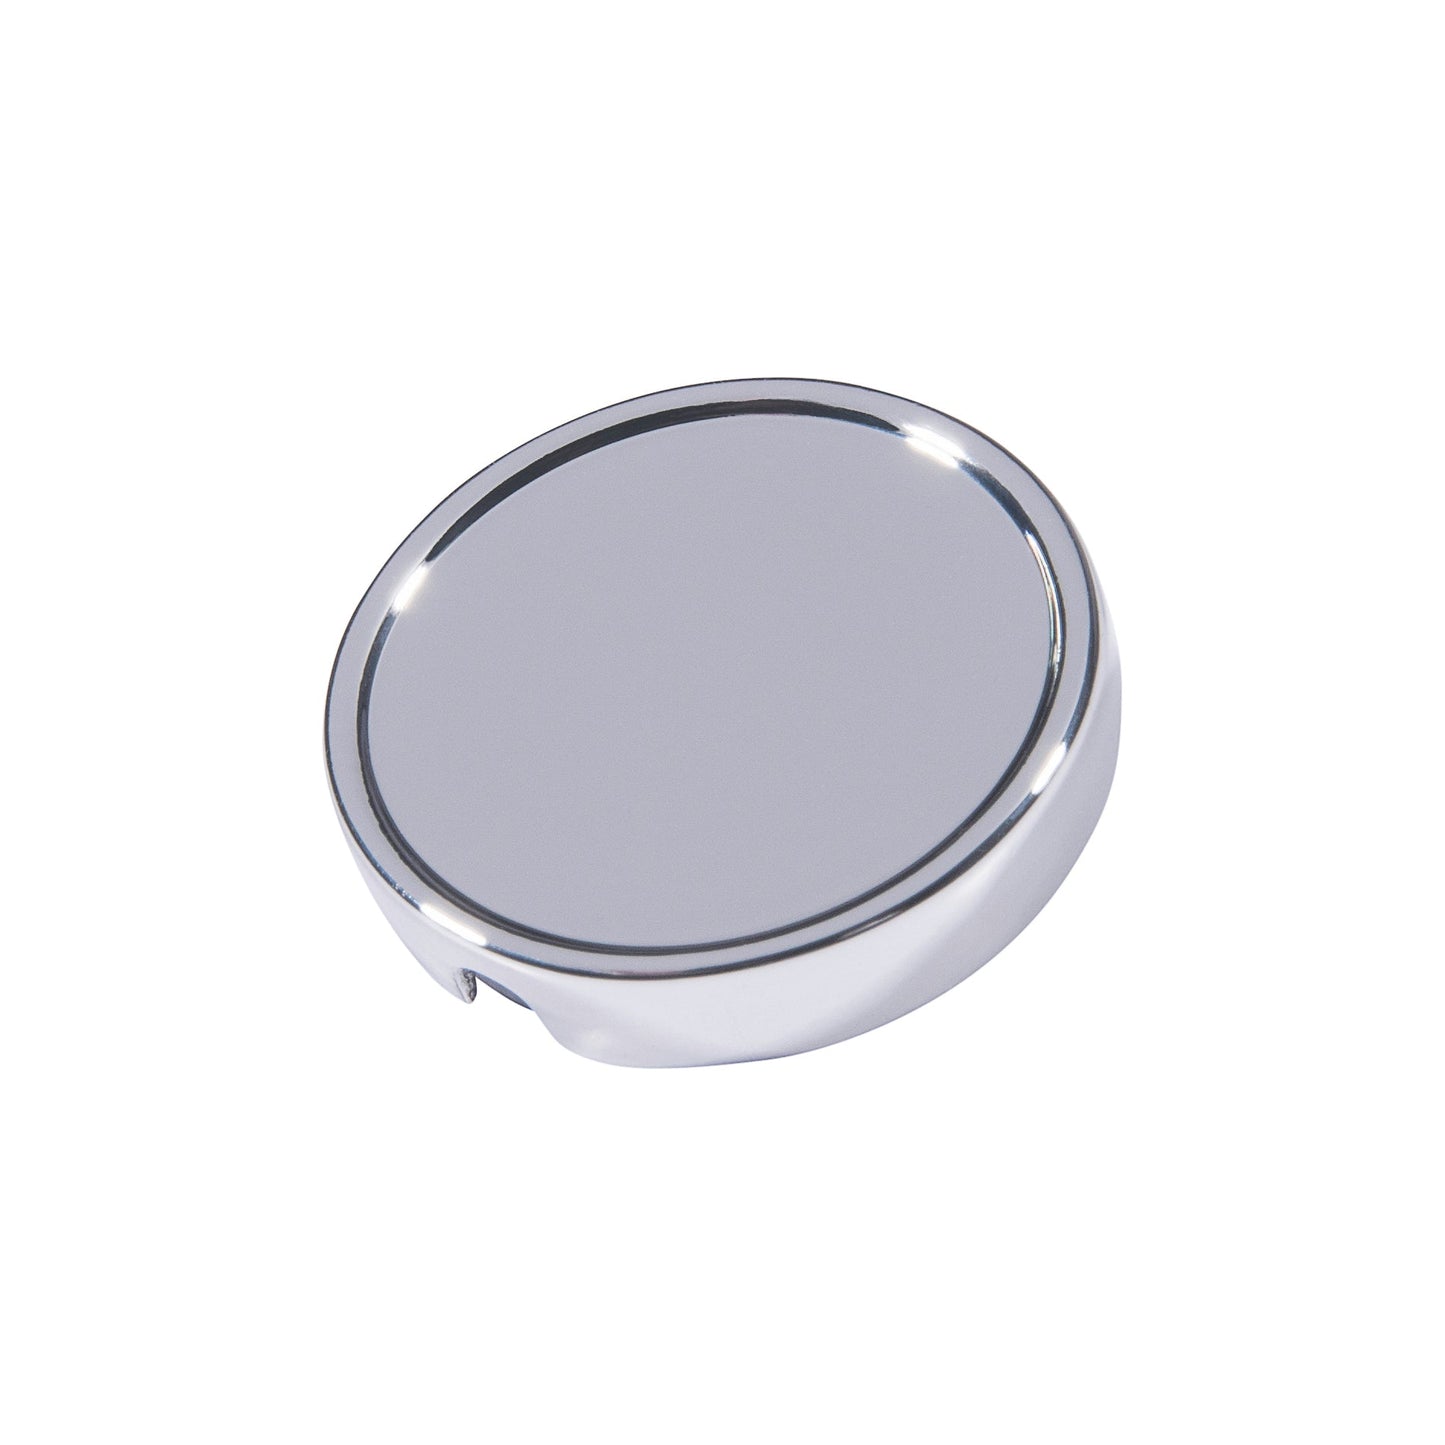 PRO - Bouton 21mm en métal argenté lisse personnalisable